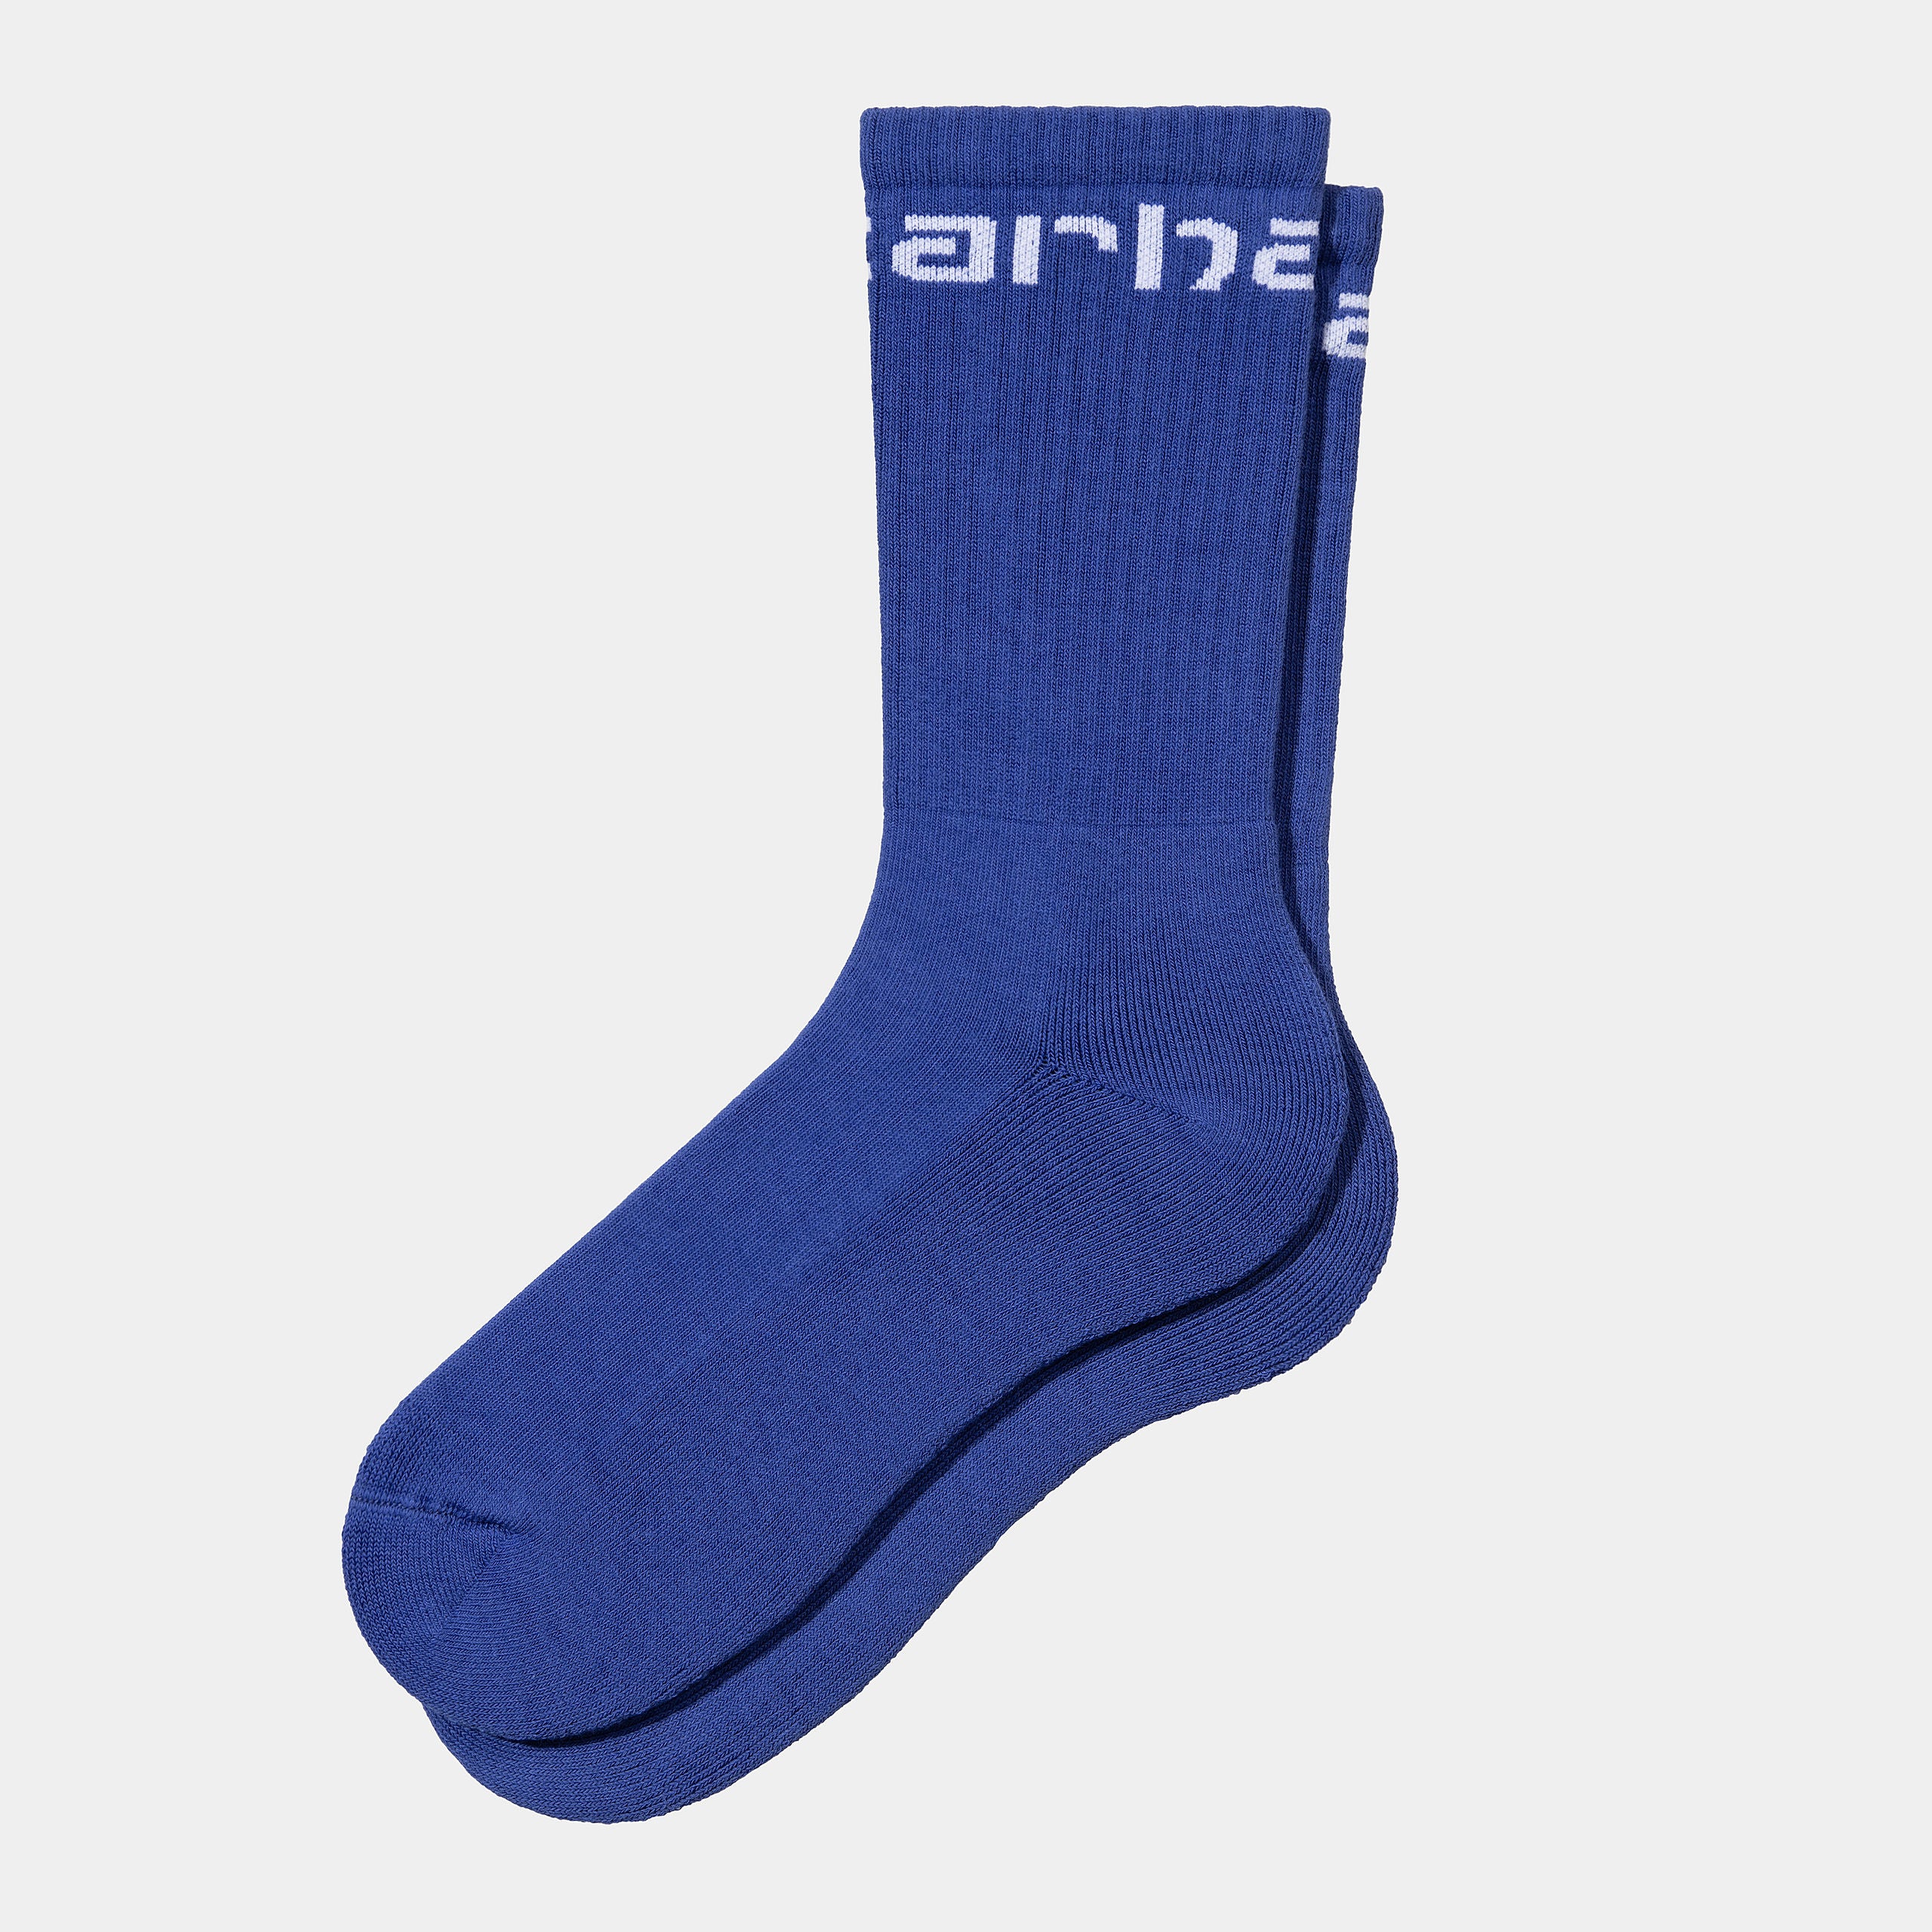 Carhartt Mens Carhartt Socks - Lazurite - The Foot Factory